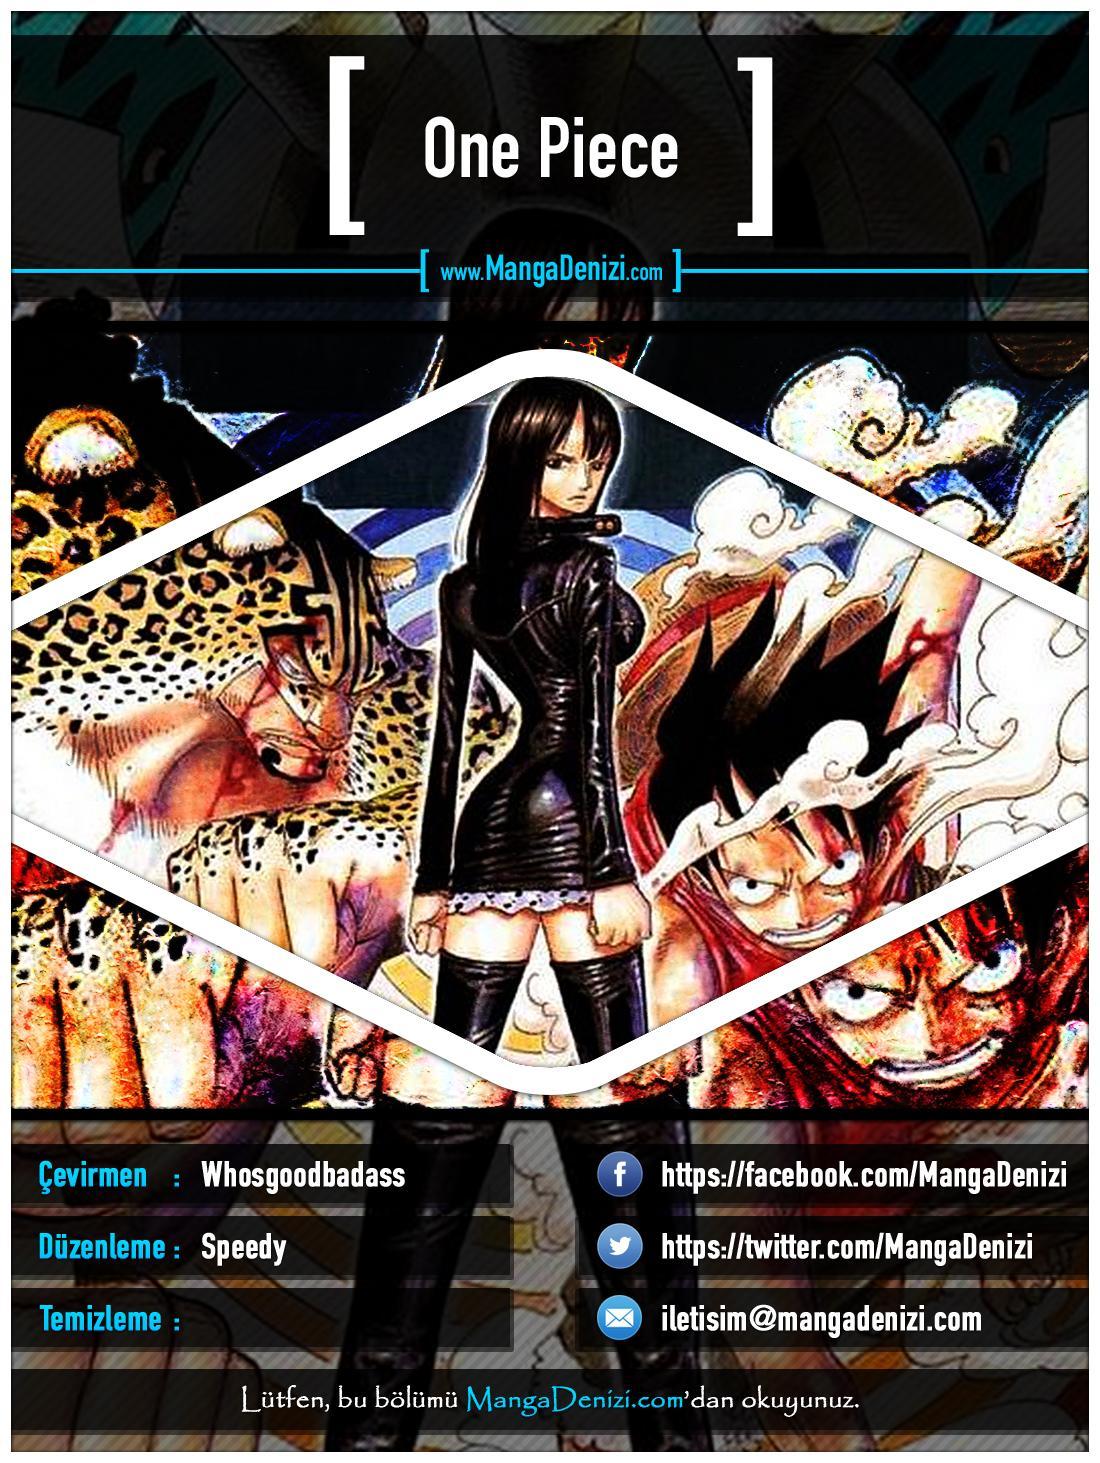 One Piece [Renkli] mangasının 0321 bölümünün 1. sayfasını okuyorsunuz.